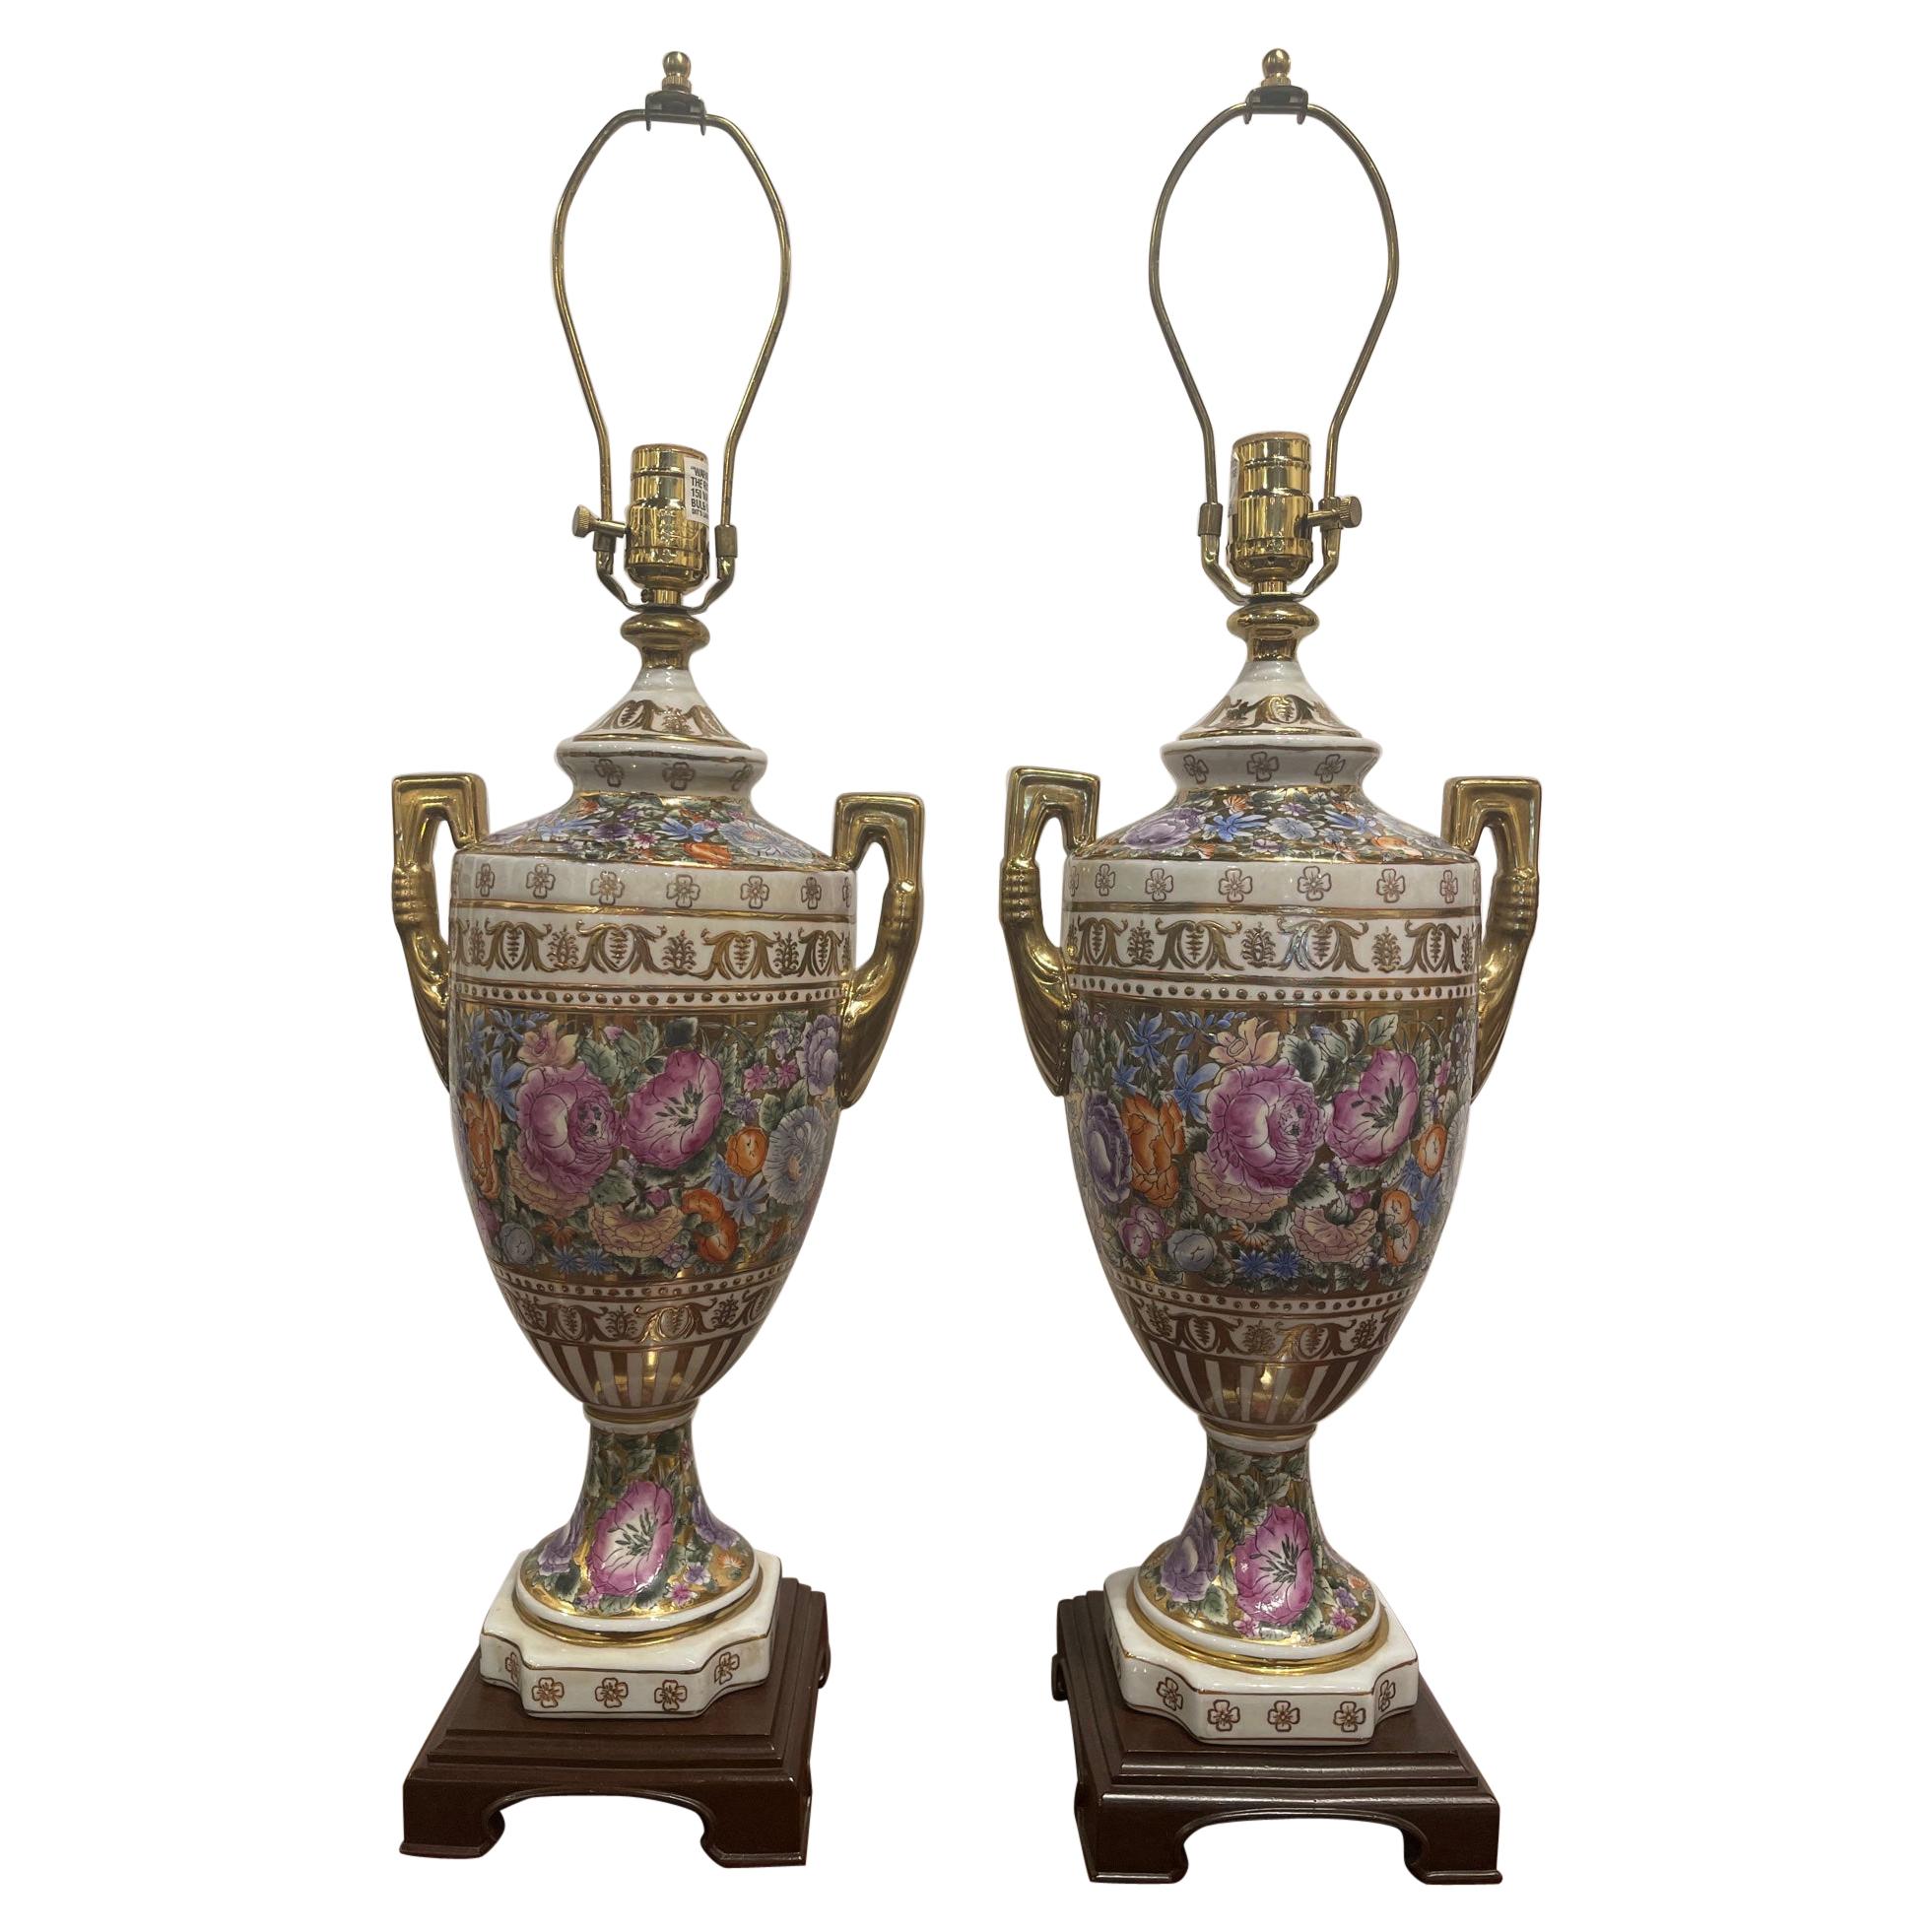 Paire de vases à fleurs en porcelaine avec poignées adaptées comme lampes, 20ème siècle